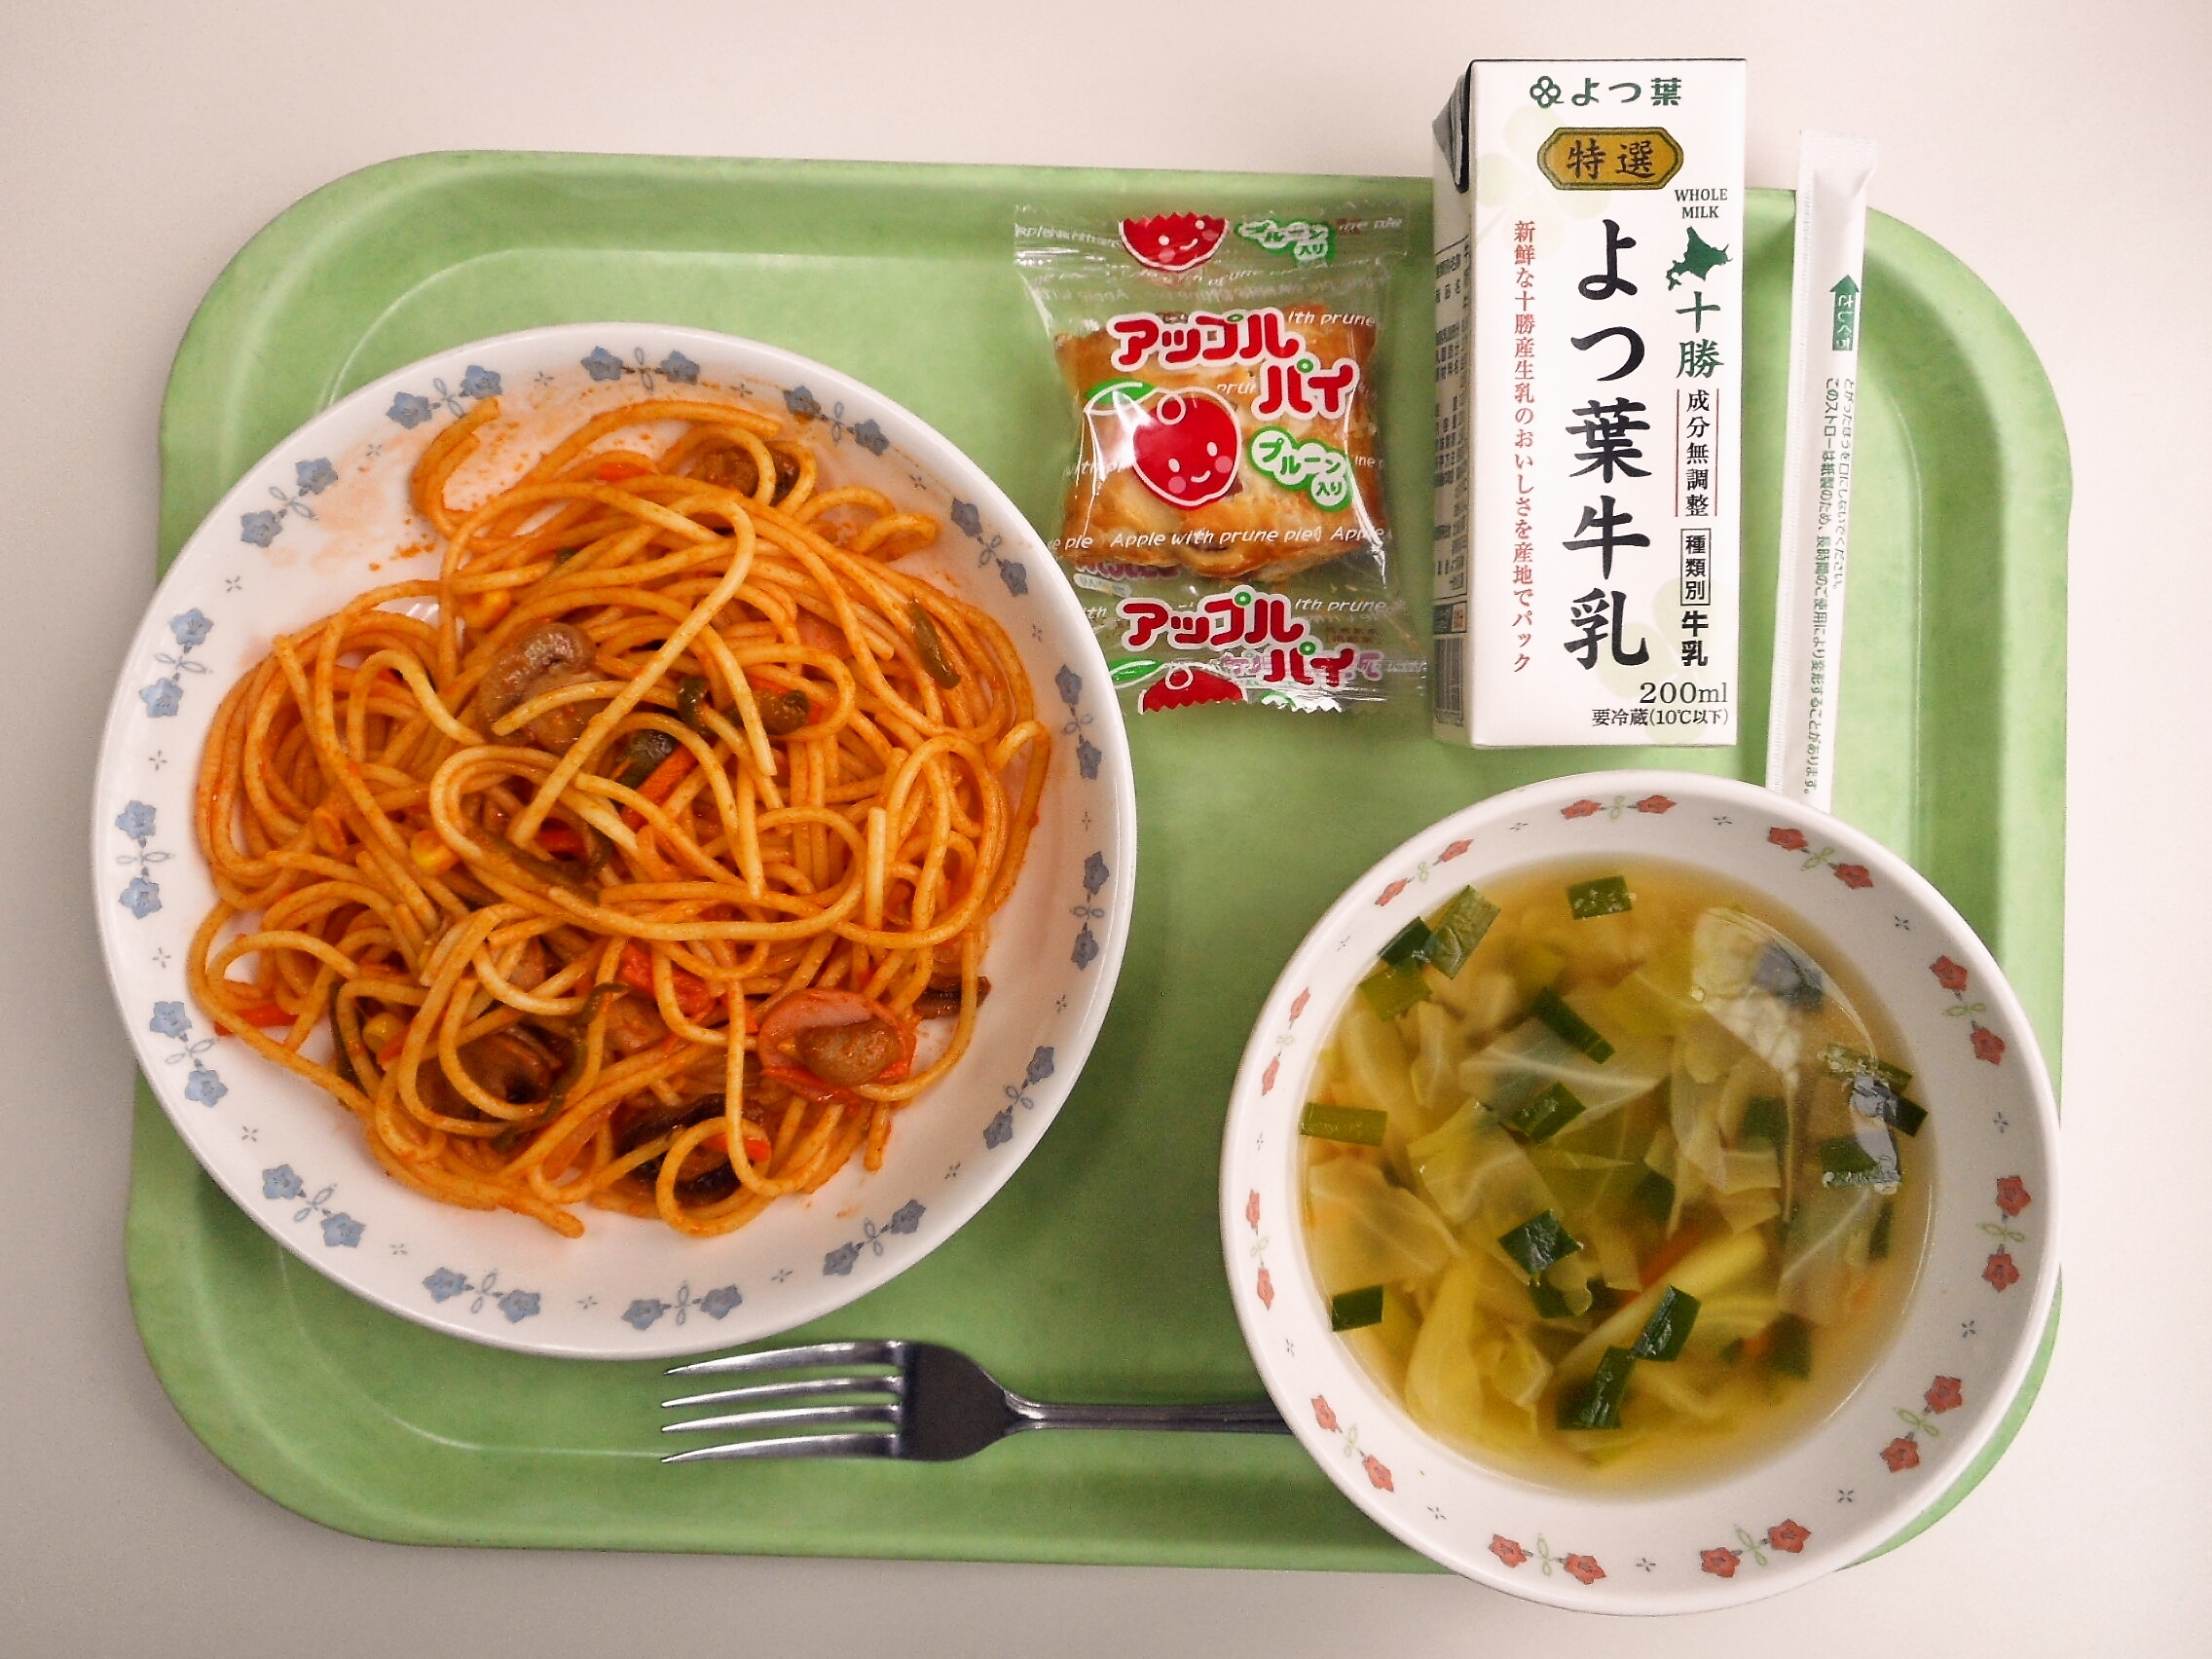 スパゲッティナポリタン、きゃべつスープ、アップルパイ、牛乳